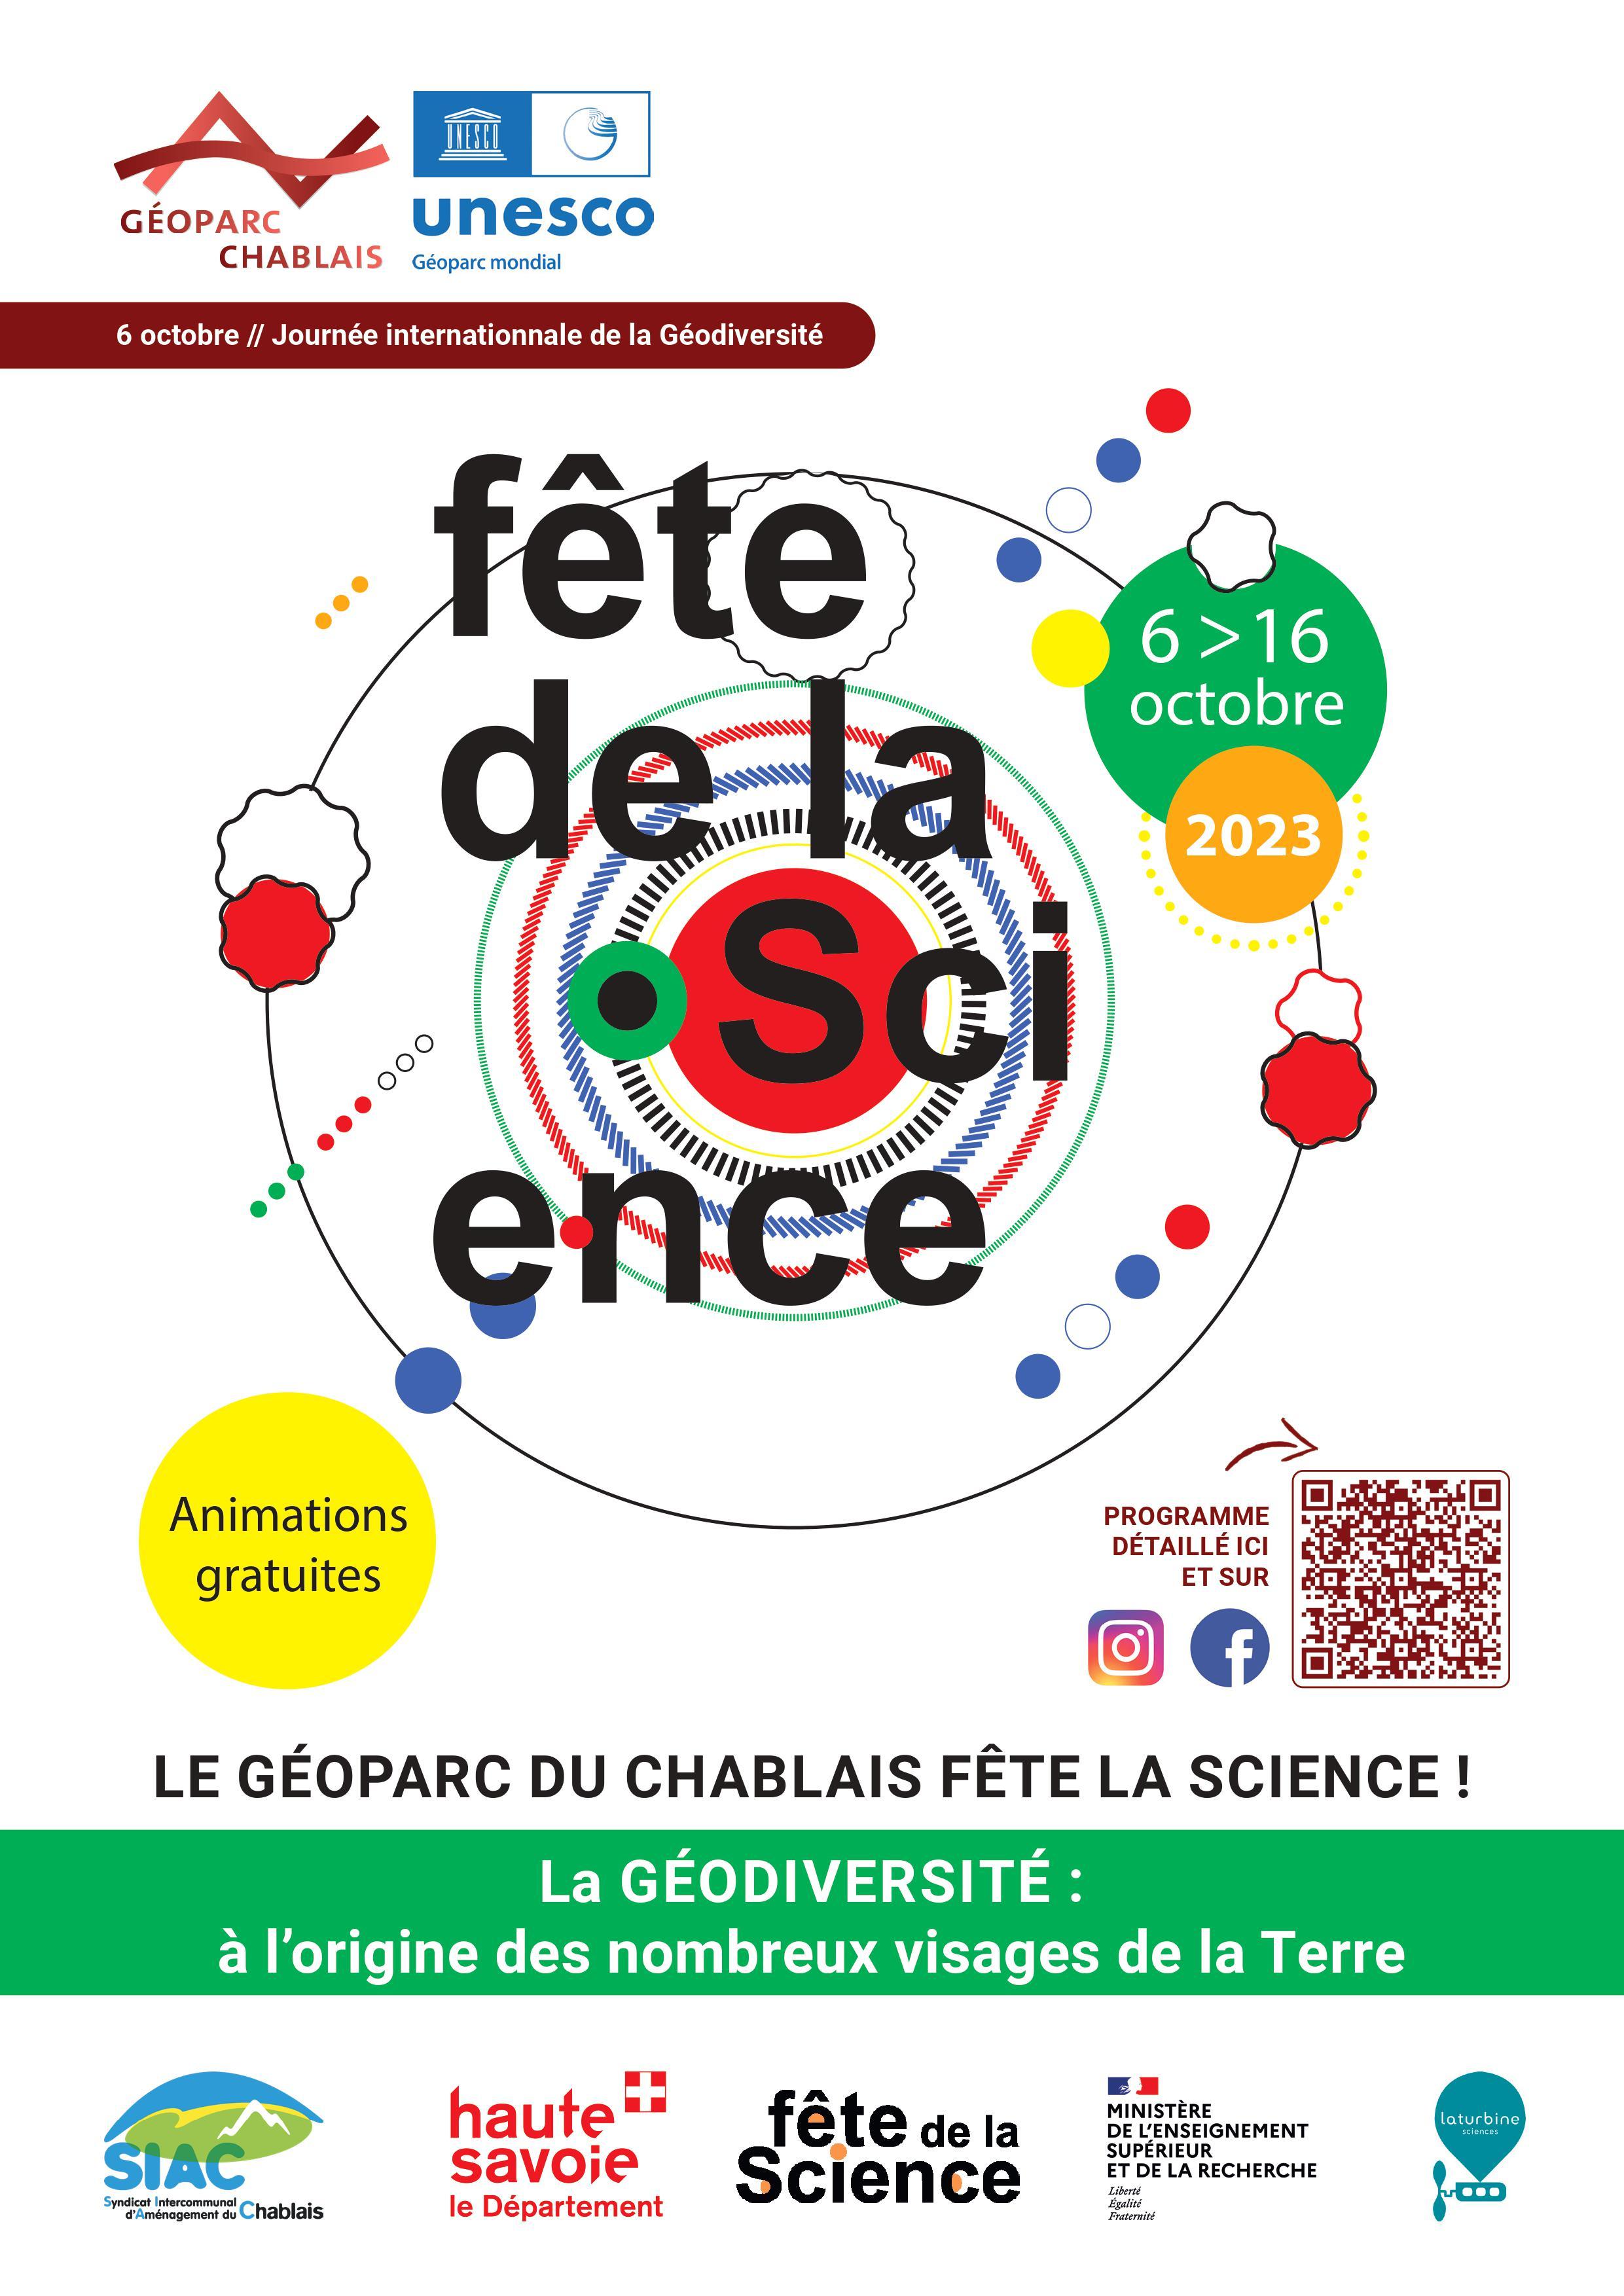 Image de couverture - Cette année, la fête de la Science se tiendra du 6 au 16 octobre 2023